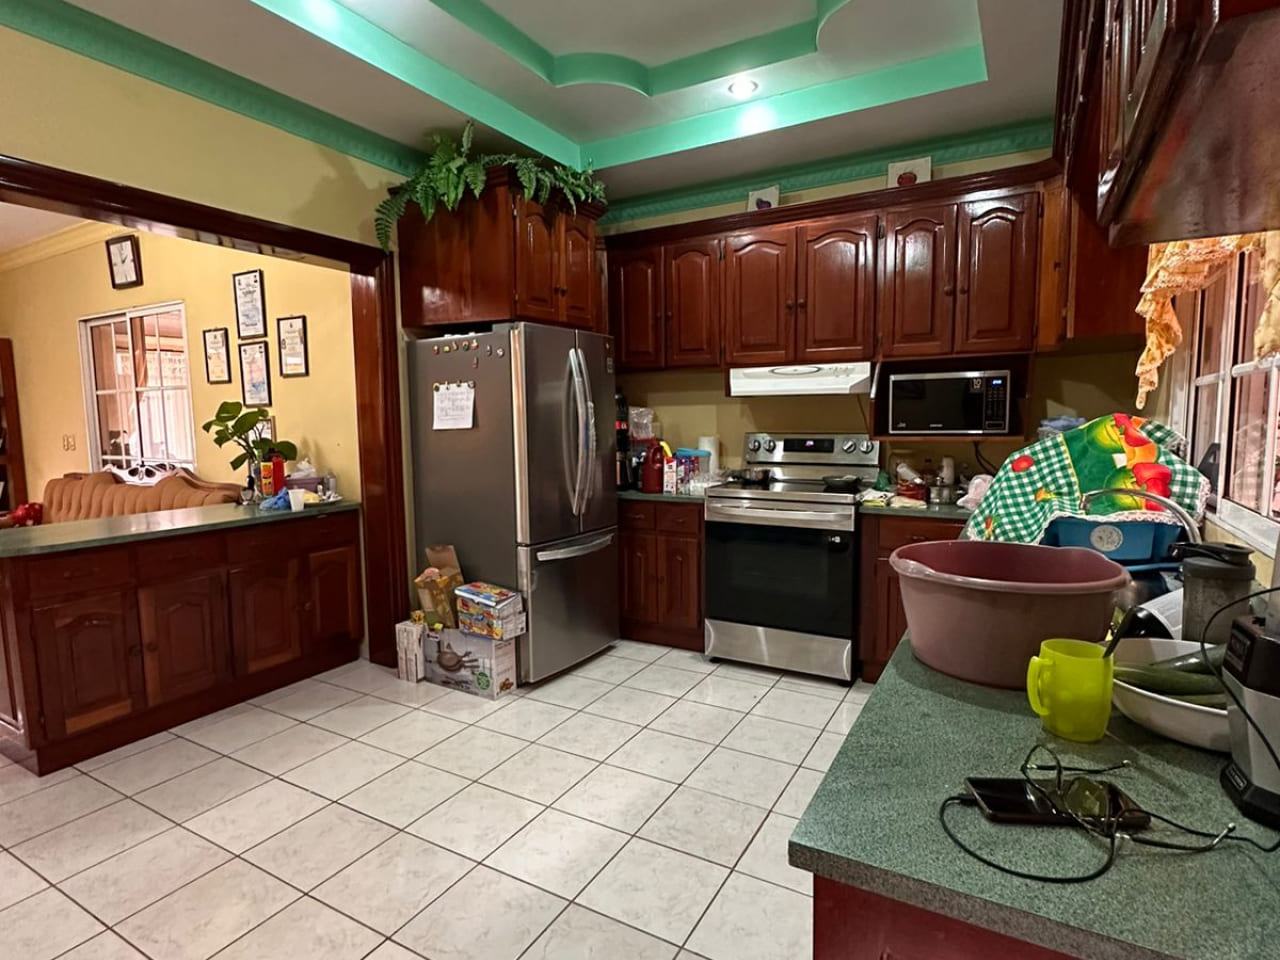 Area de cocina, con paredes de color amarillo suave, suelo de ceramica color blanco, muebles de color cafe barnizados, con area de lavado y espacio para colocar linea blanca.